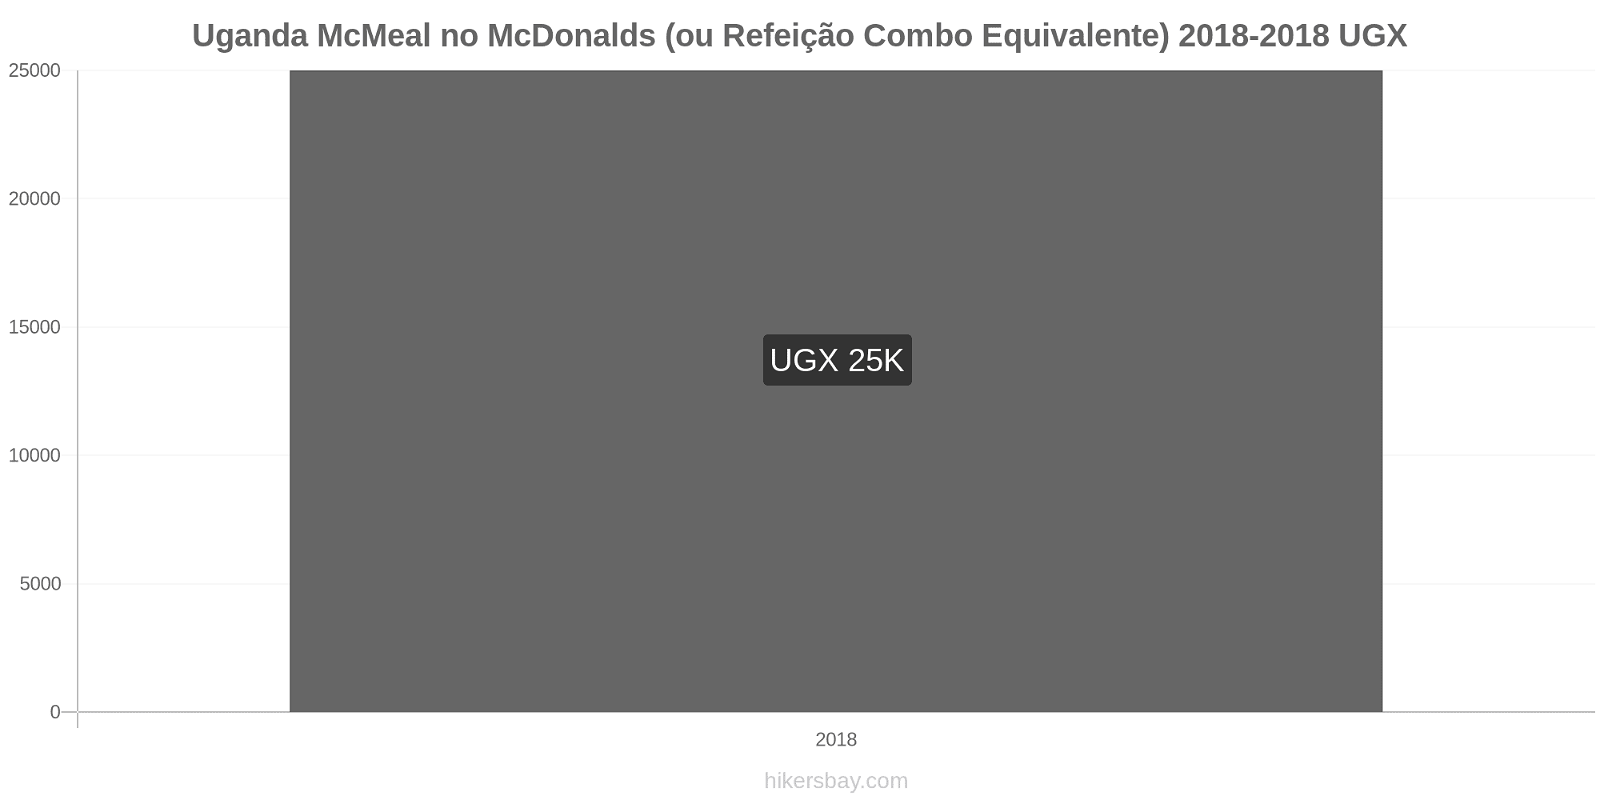 Uganda variação de preço McMeal no McDonald ' s (ou refeição Combo equivalente) hikersbay.com